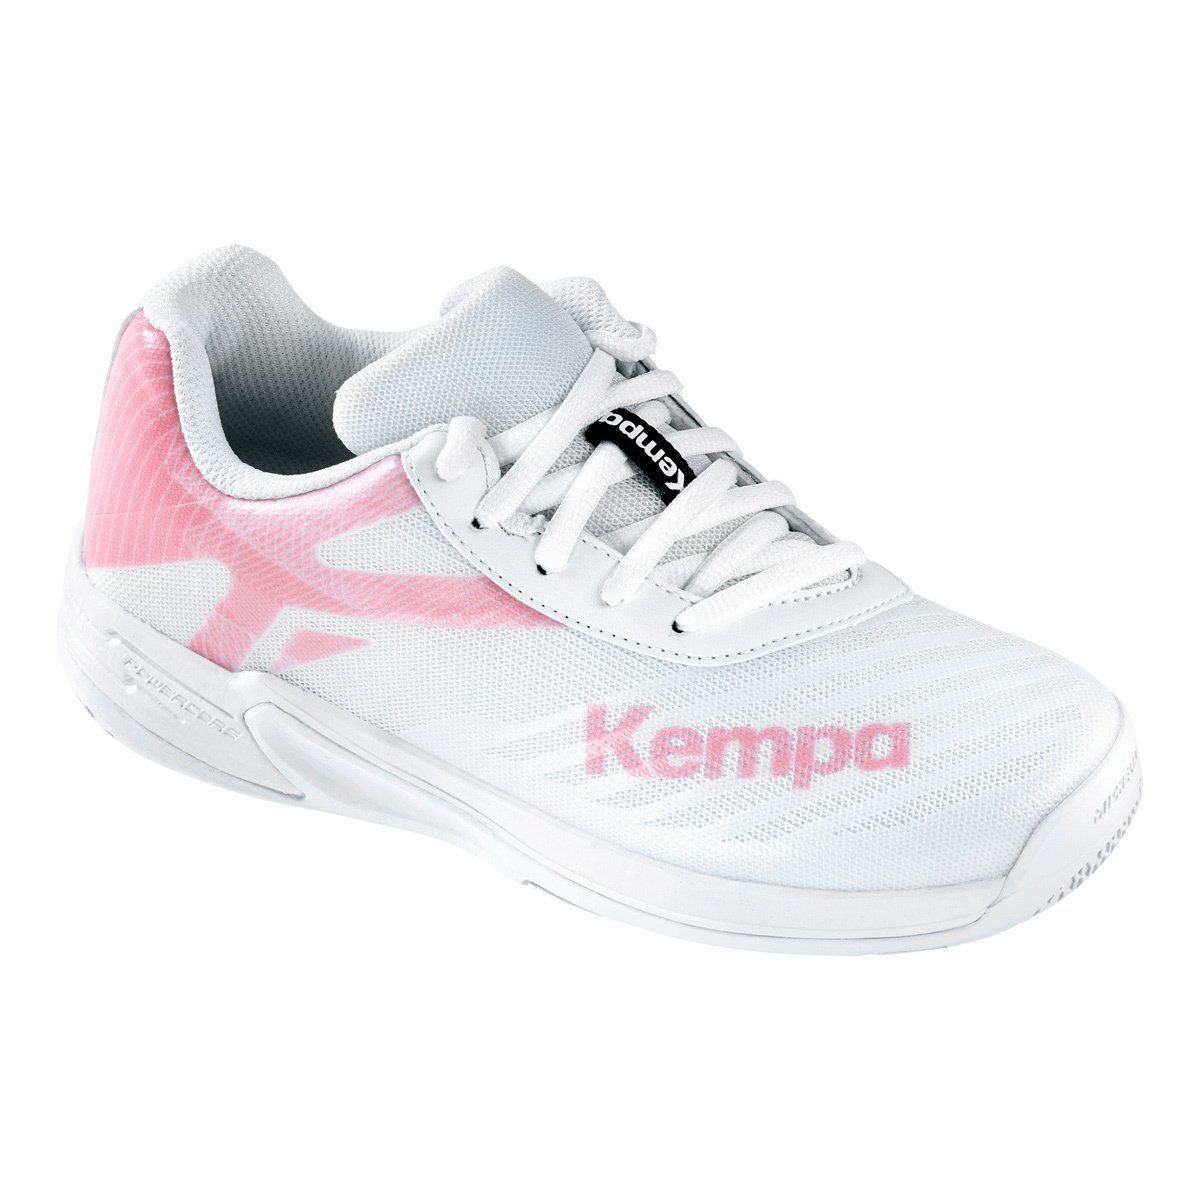 Kempa Kempa Hallen-Sport-Schuhe Hallenschuh cloud weiß/rose